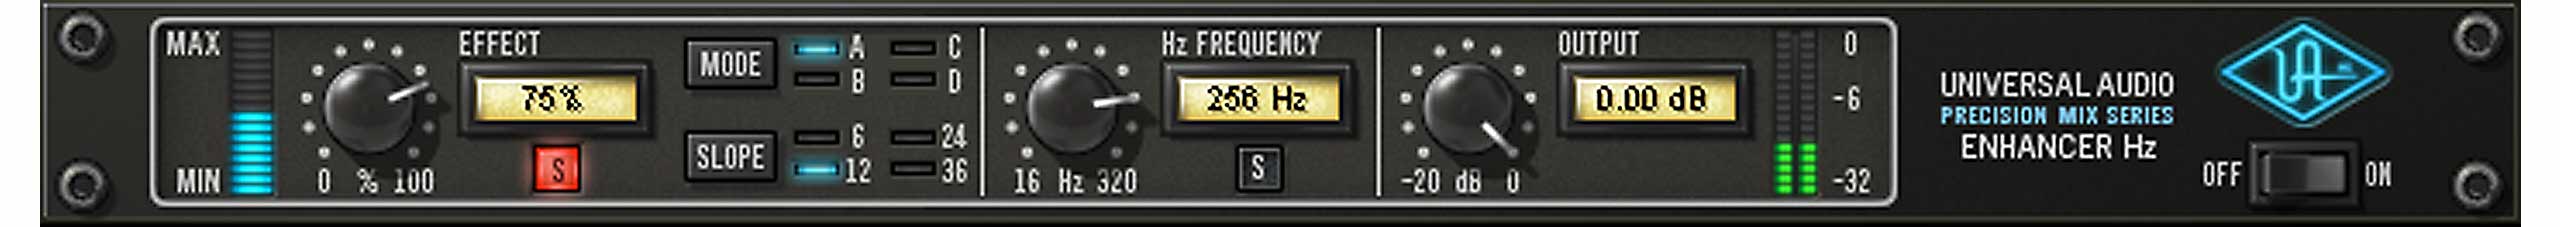 UA precision Enhancer Hz